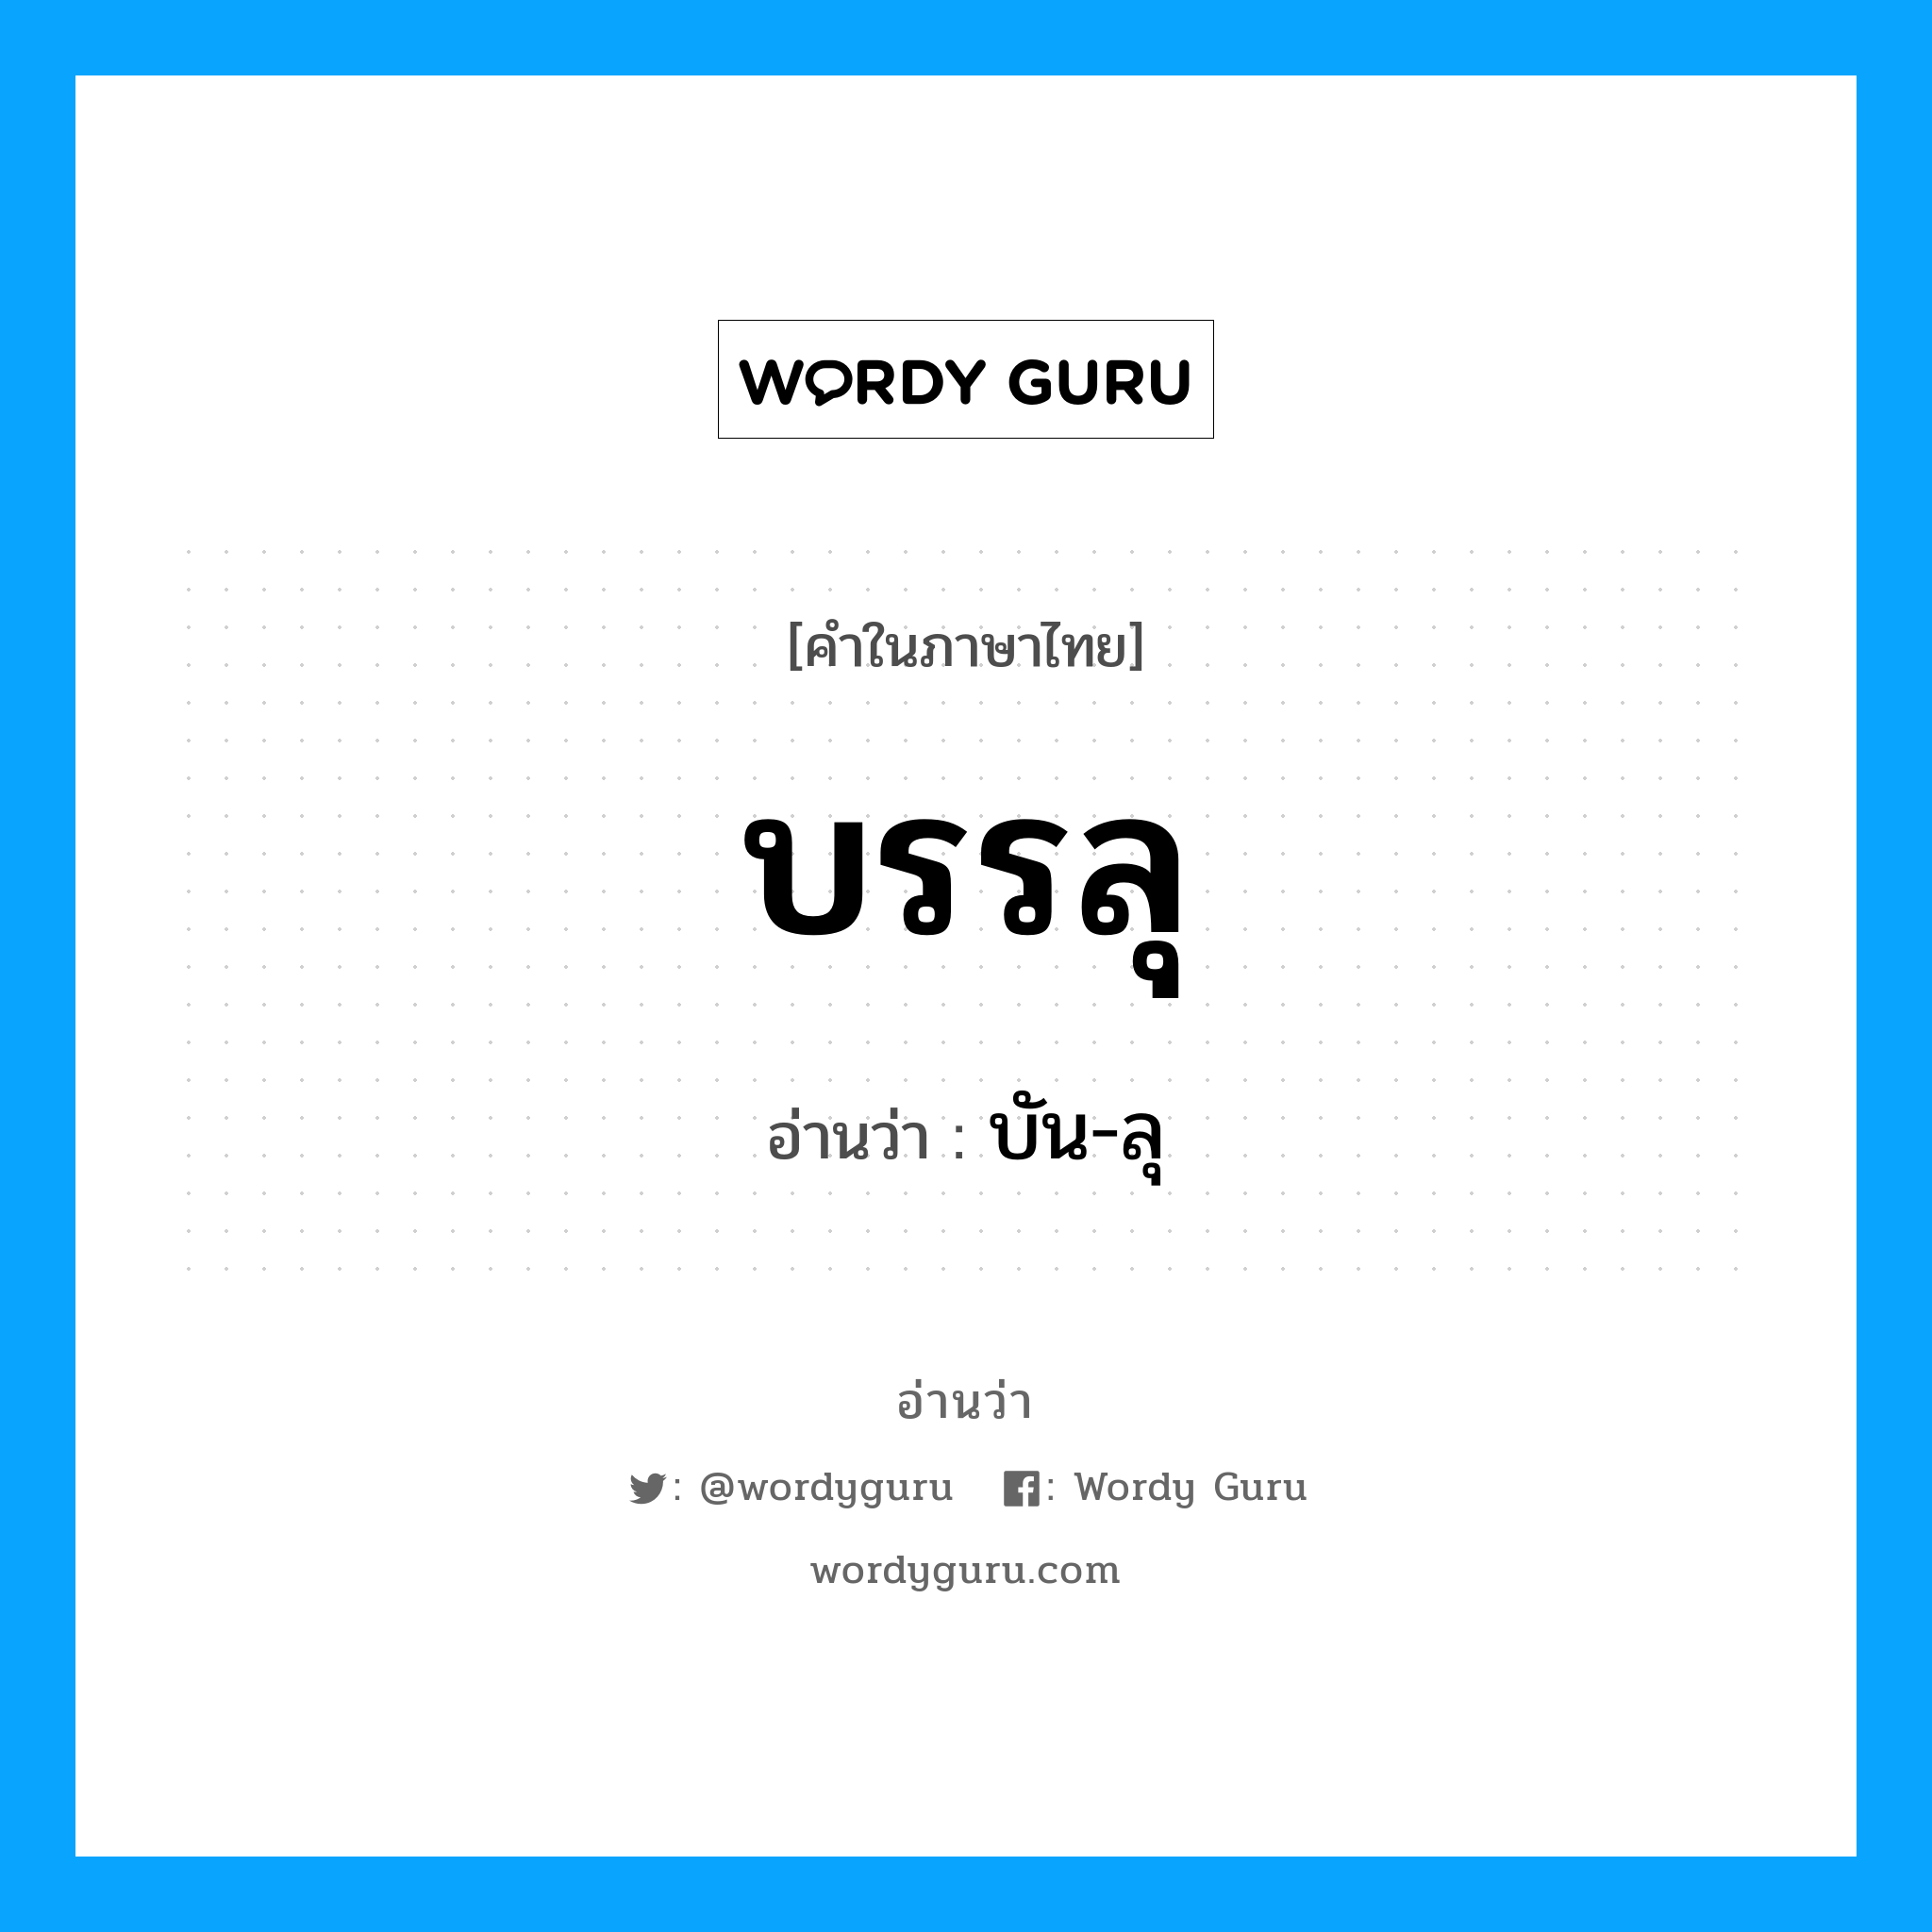 บัน-ลุ เป็นคำอ่านของคำไหน?, คำในภาษาไทย บัน-ลุ อ่านว่า บรรลุ